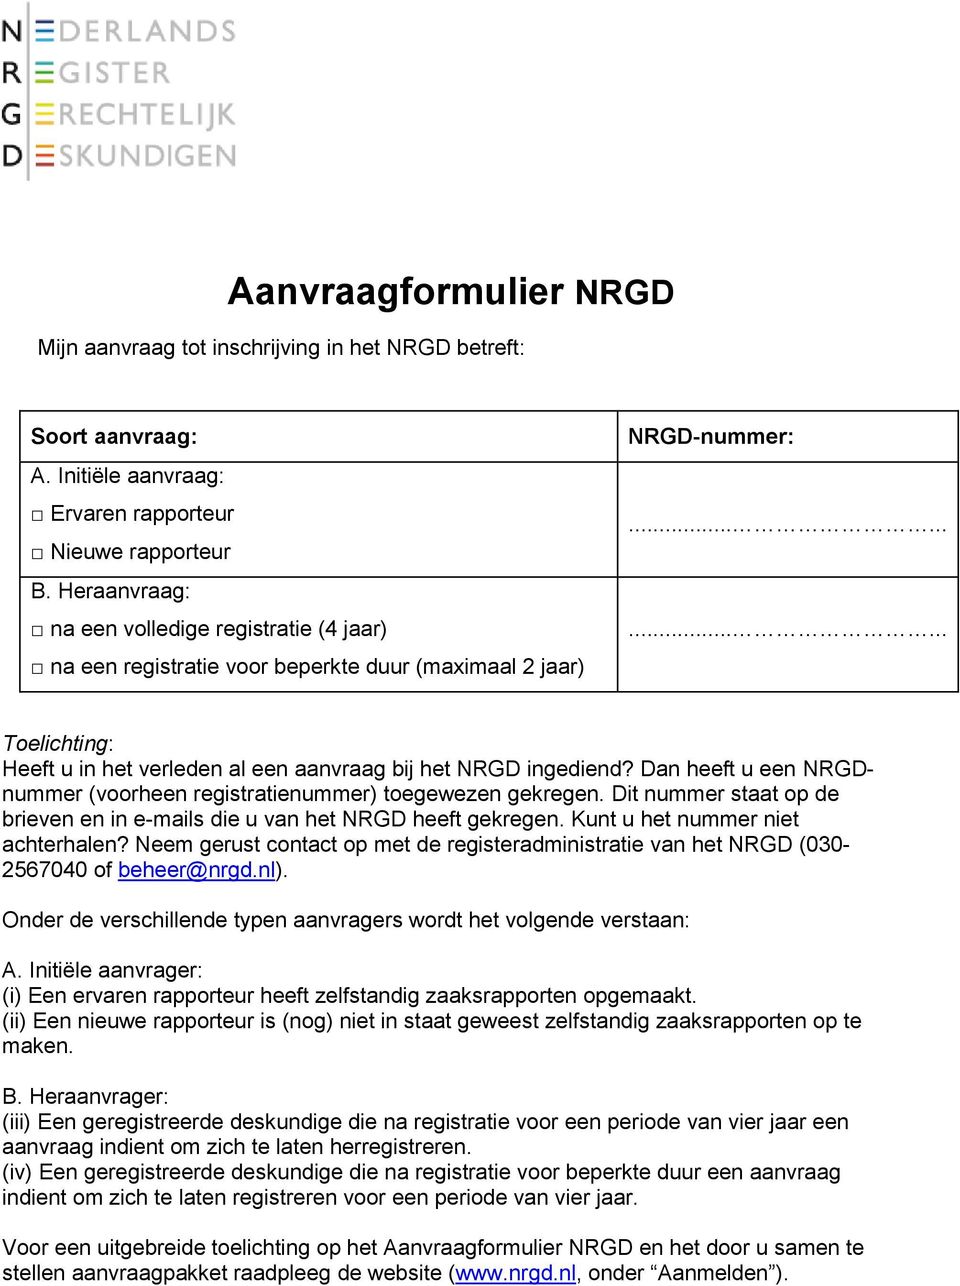 Dan heeft u een NRGDnummer (voorheen registratienummer) toegewezen gekregen. Dit nummer staat op de brieven en in e-mails die u van het NRGD heeft gekregen. Kunt u het nummer niet achterhalen?